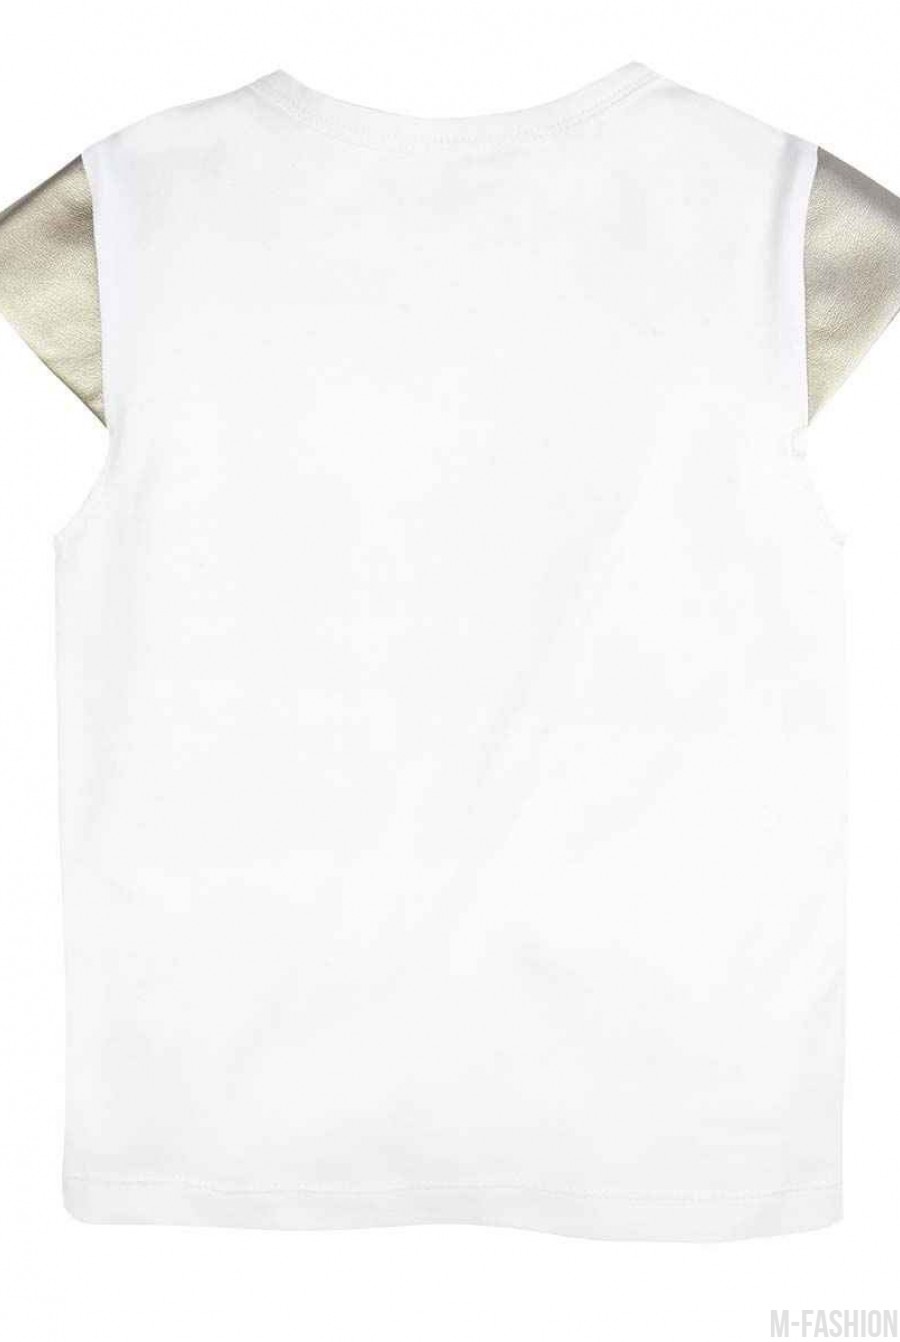 Трикотажная белая футболка с короткими золотистыми рукавами из эко-кожи и с возможностью индивидуальной печати цифры (1-4) на принте- Фото 5